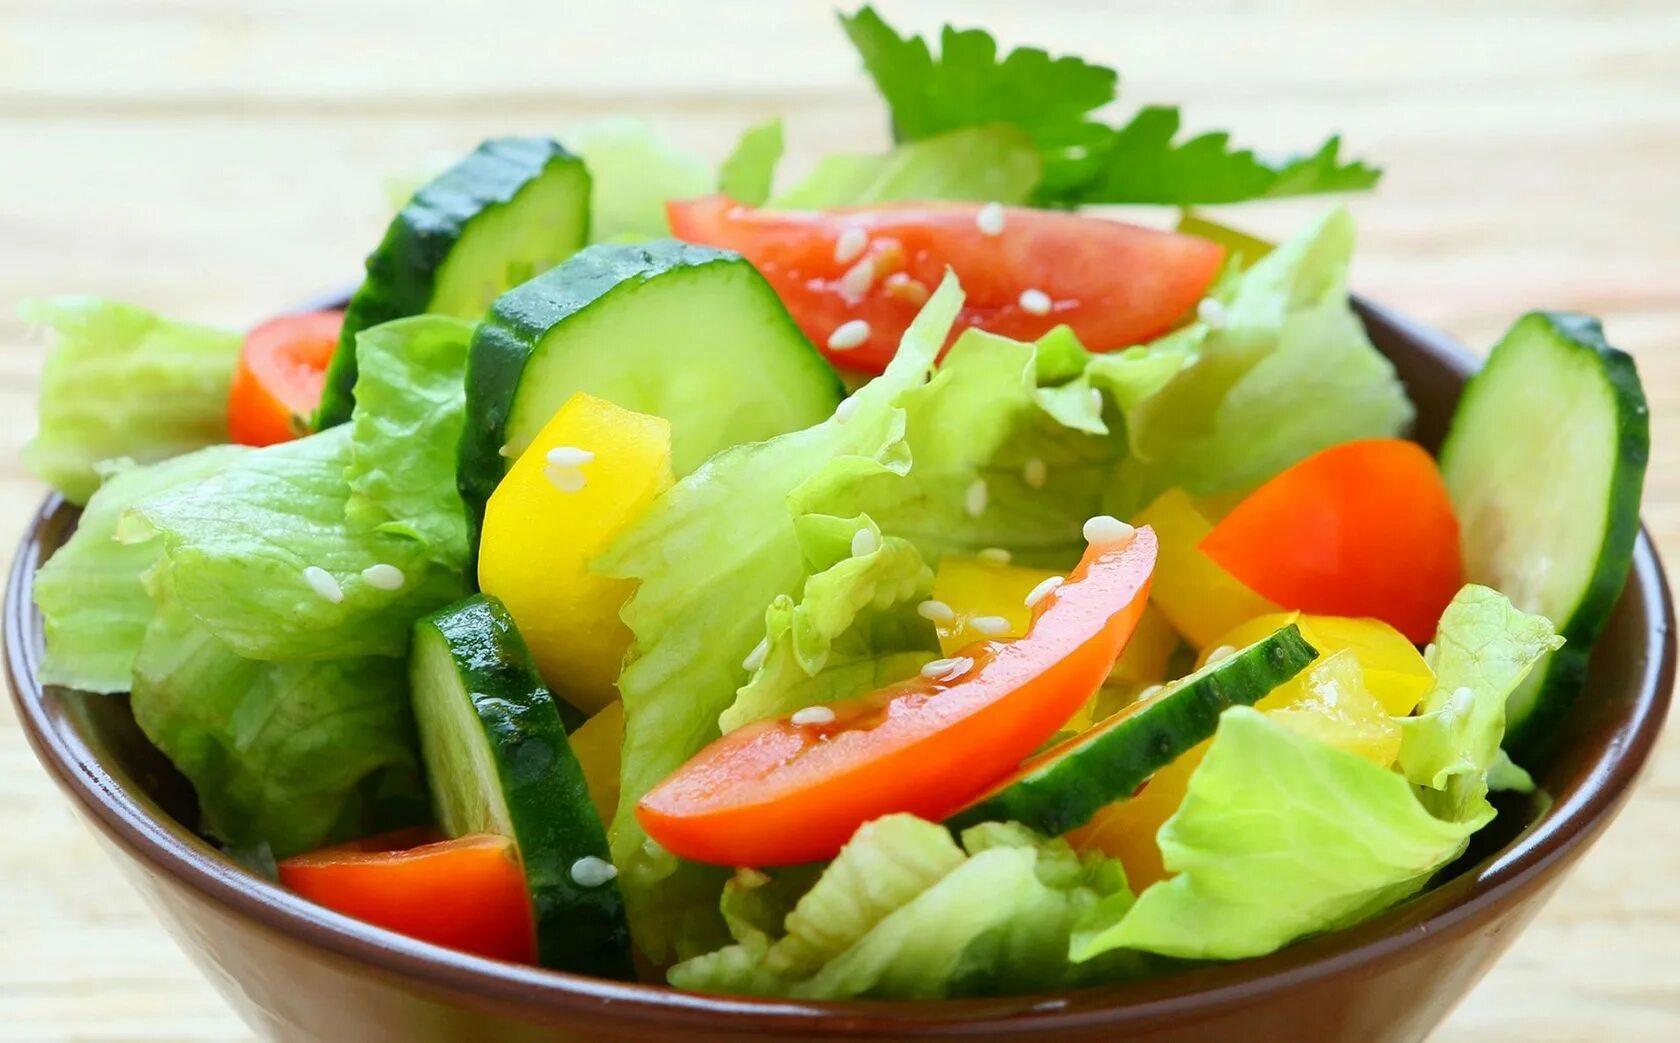 Очень вкусные салаты из овощей